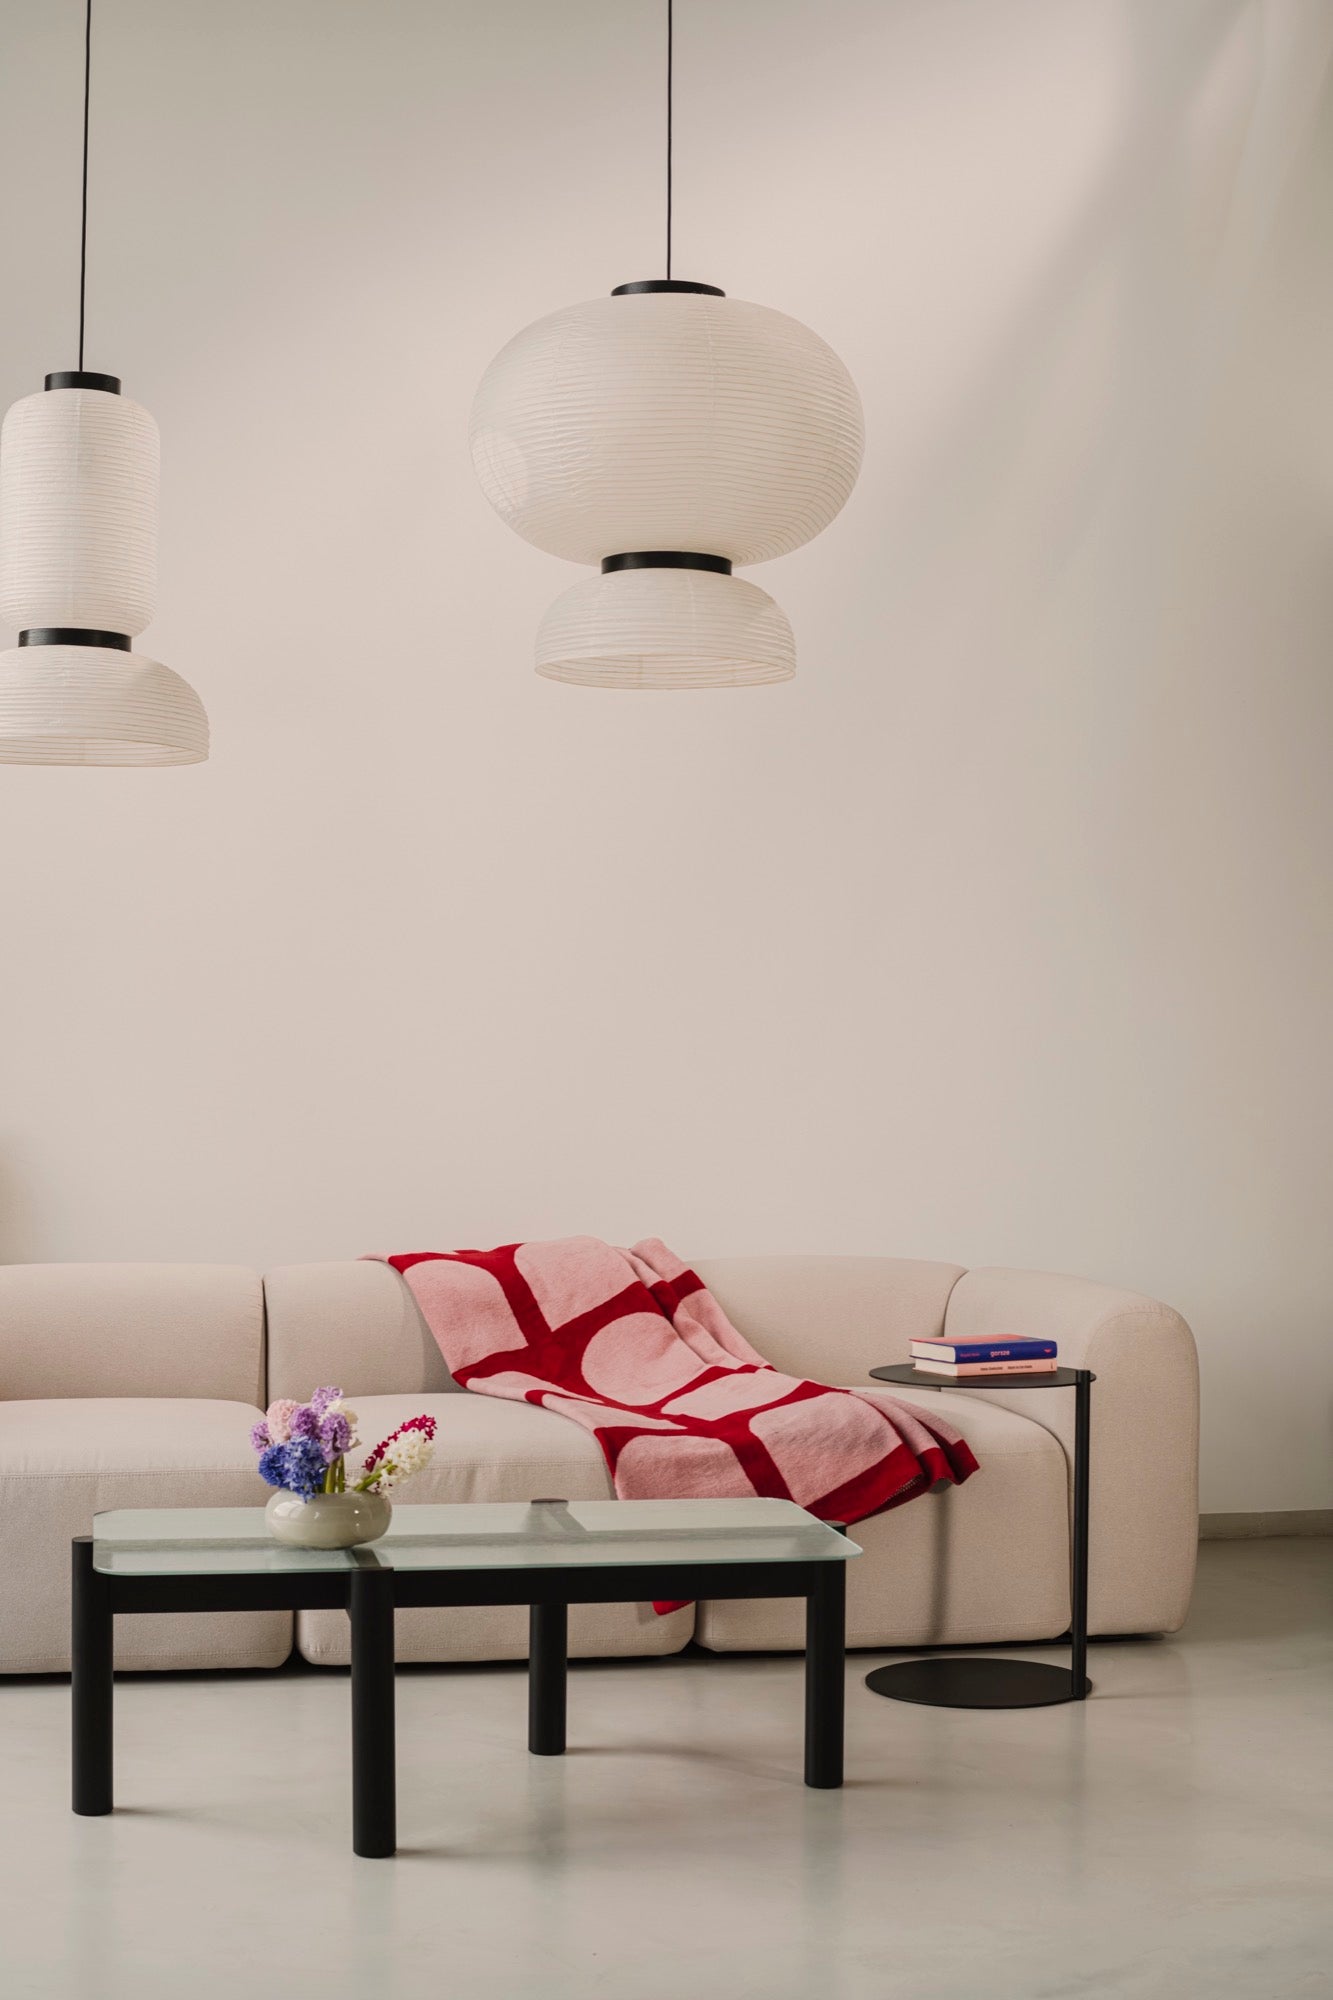 Machen Sie es sich bequem und entdecken Sie Wohnideen für kleine, gemütliche und ästhetische Räume. Entdecken Sie moderne Designs wie Couchtische, poufs, Hocker, Beistelltische, sofas, Sessel, Ottomane, TV-Ständer, sideboards und mehr. Bunt, japandi oder minimalistisch.